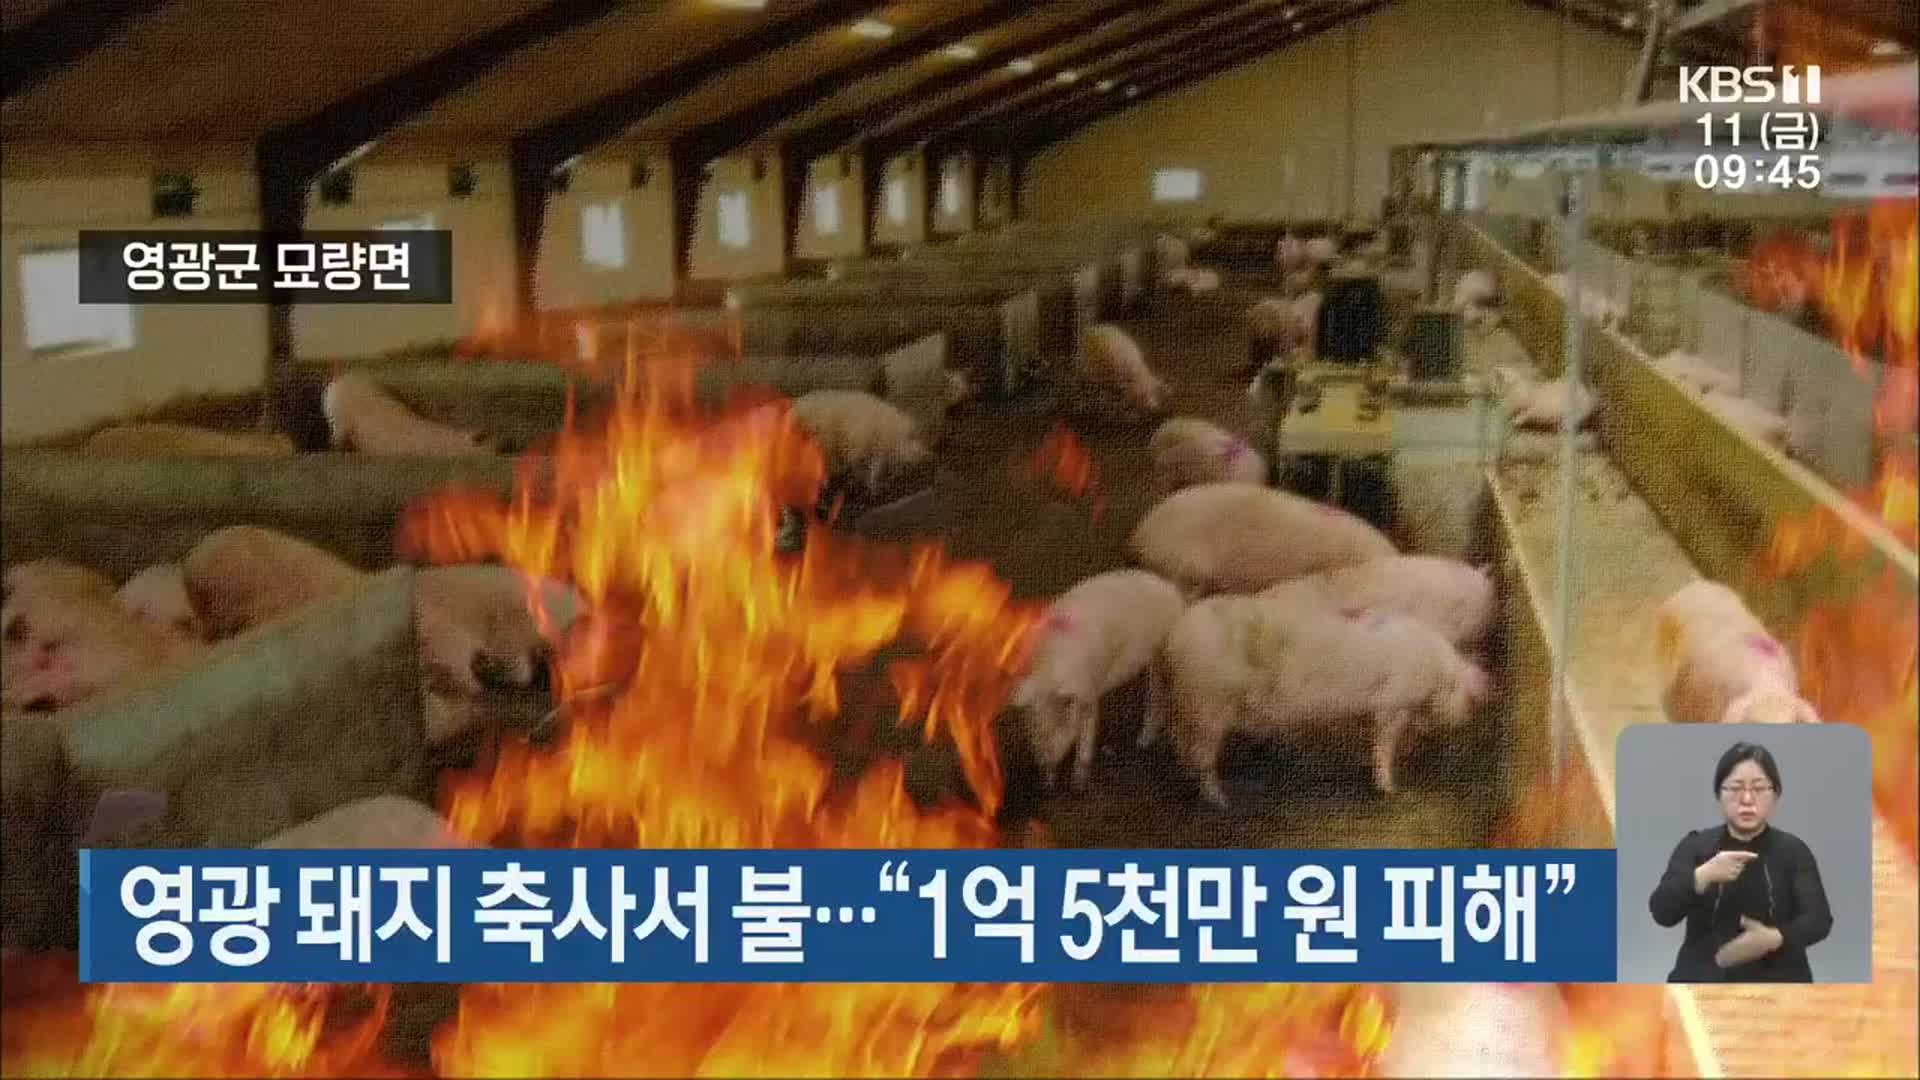 영광 돼지 축사서 불…“1억 5천만 원 피해”